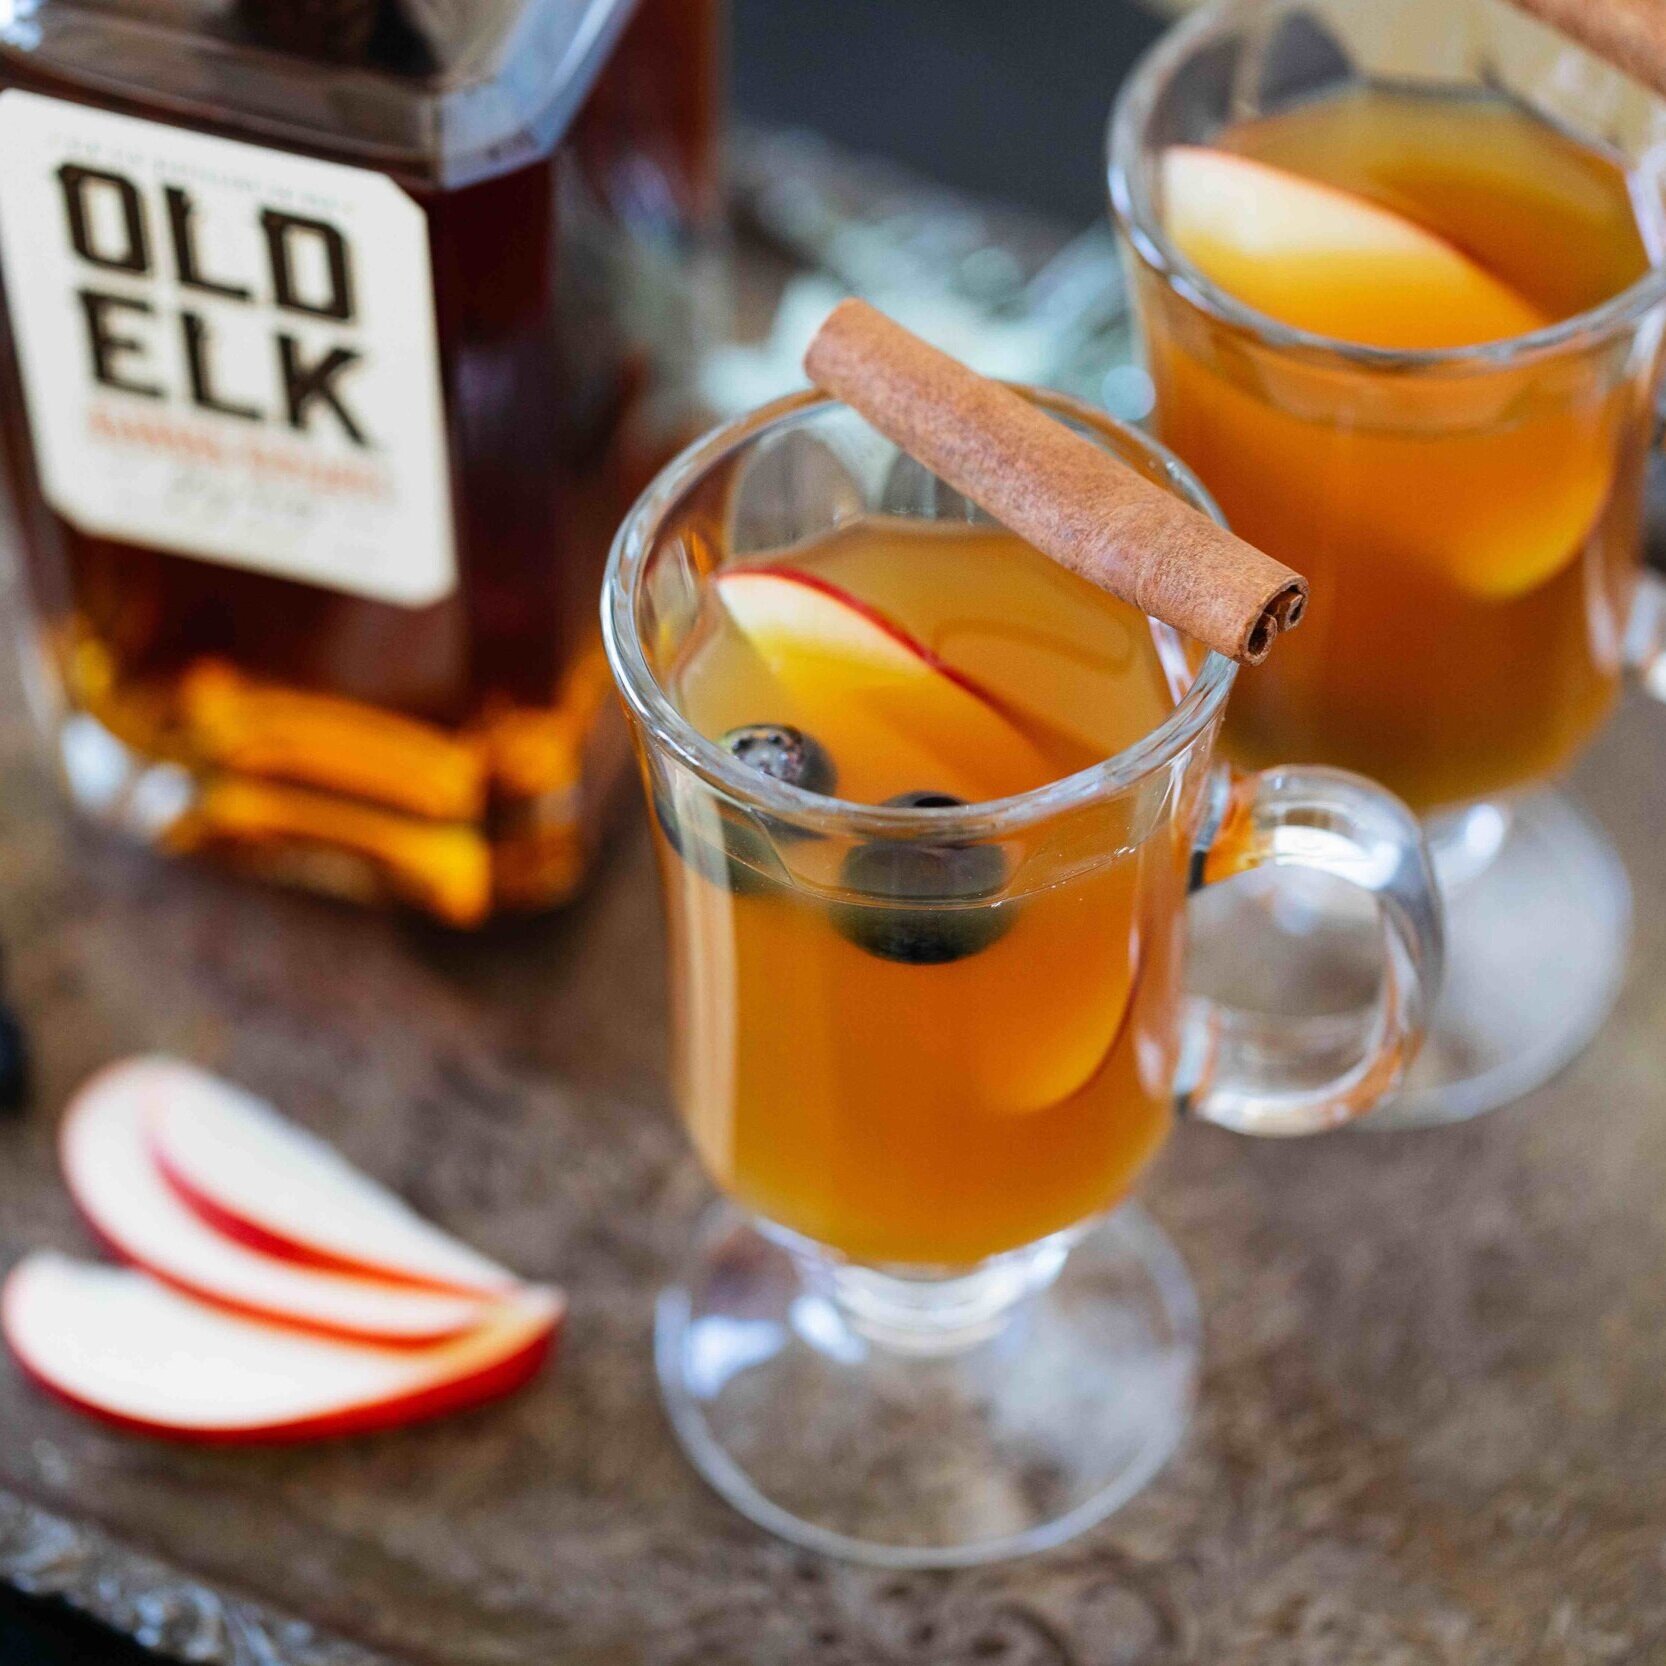 Old Elk Cider